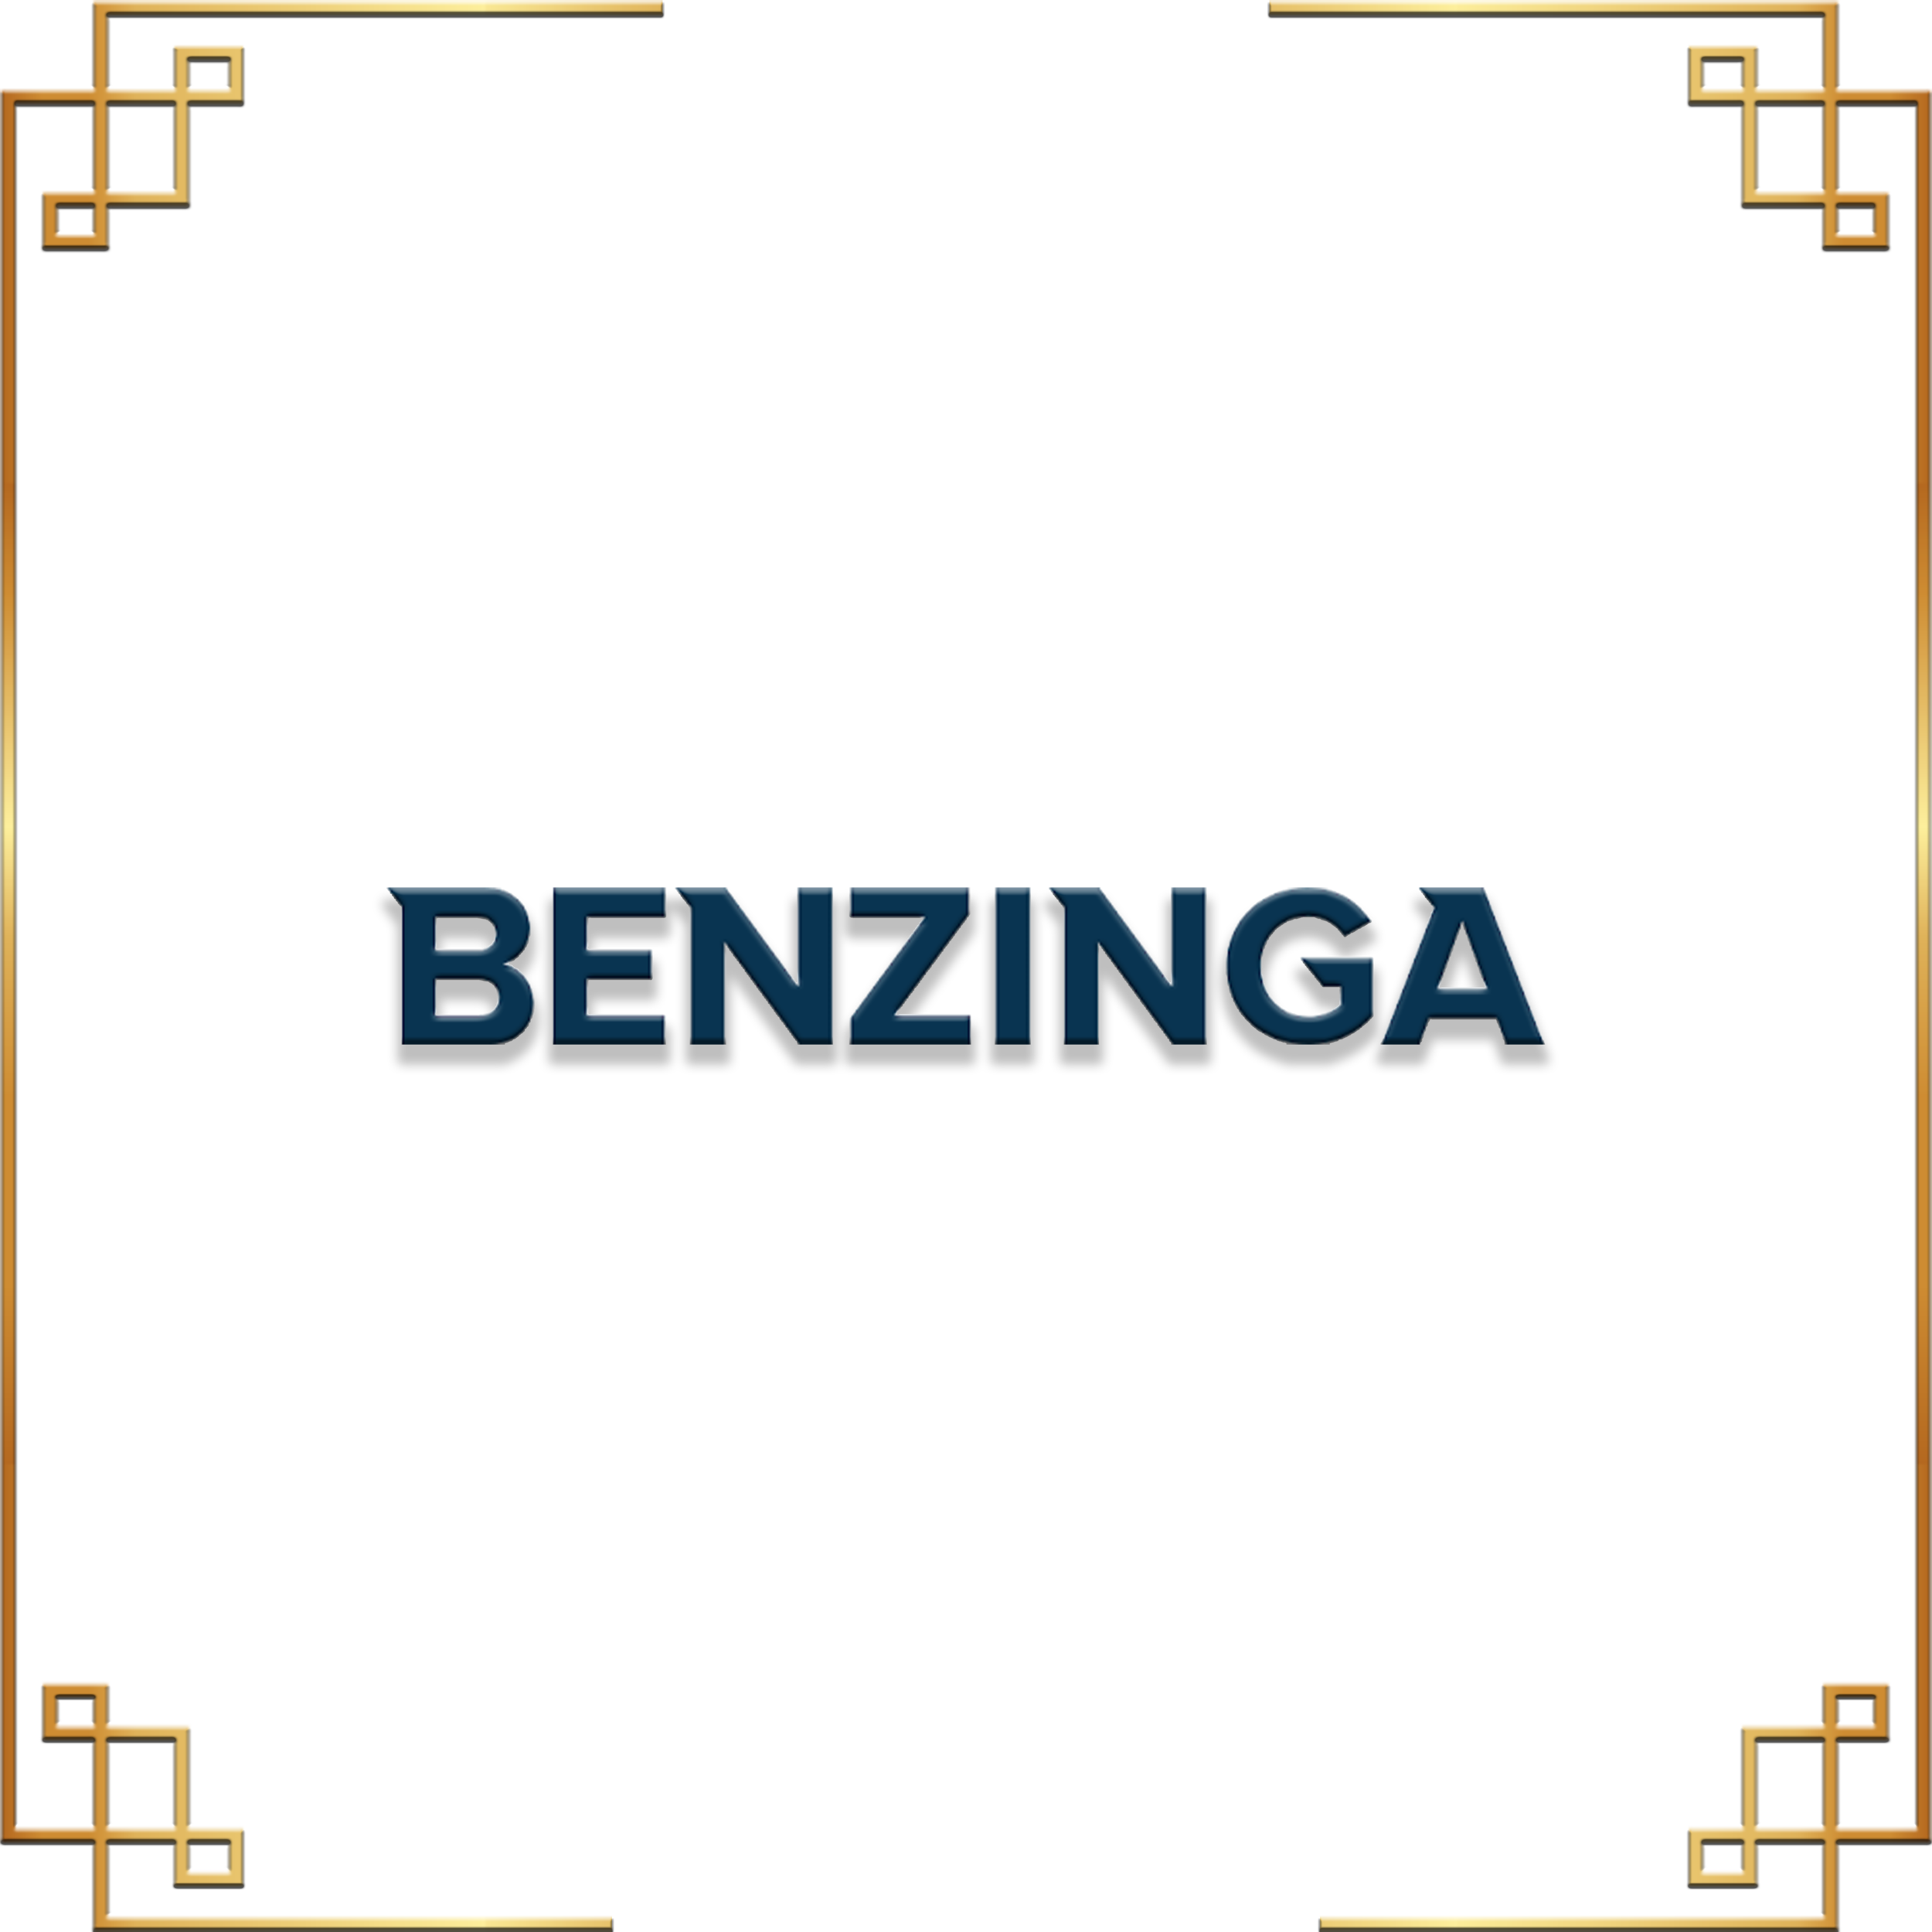 BENZINGA.png